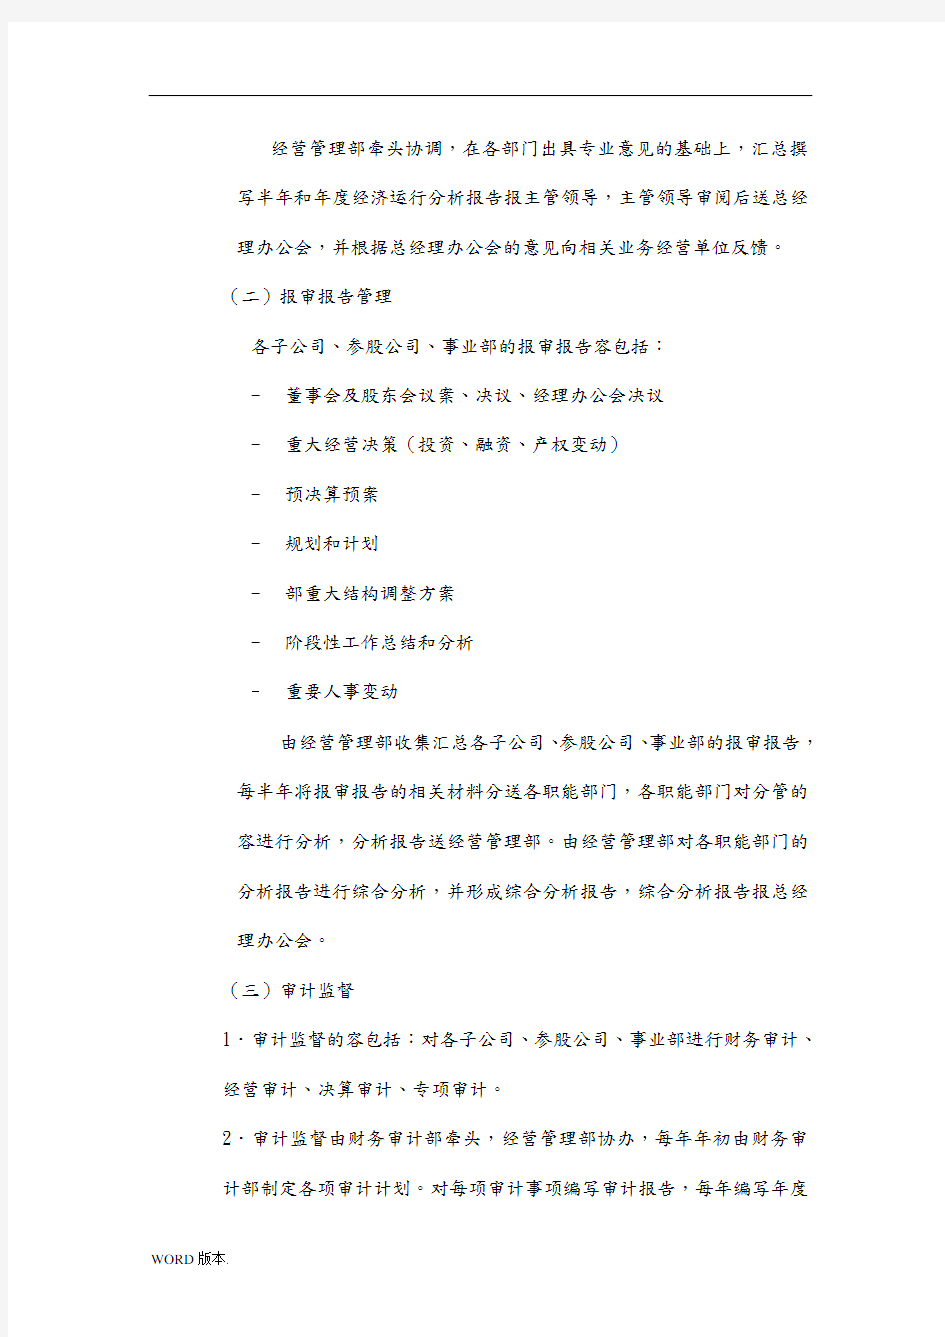 5黑龙江辰能集团公司运营监控管理制度修改